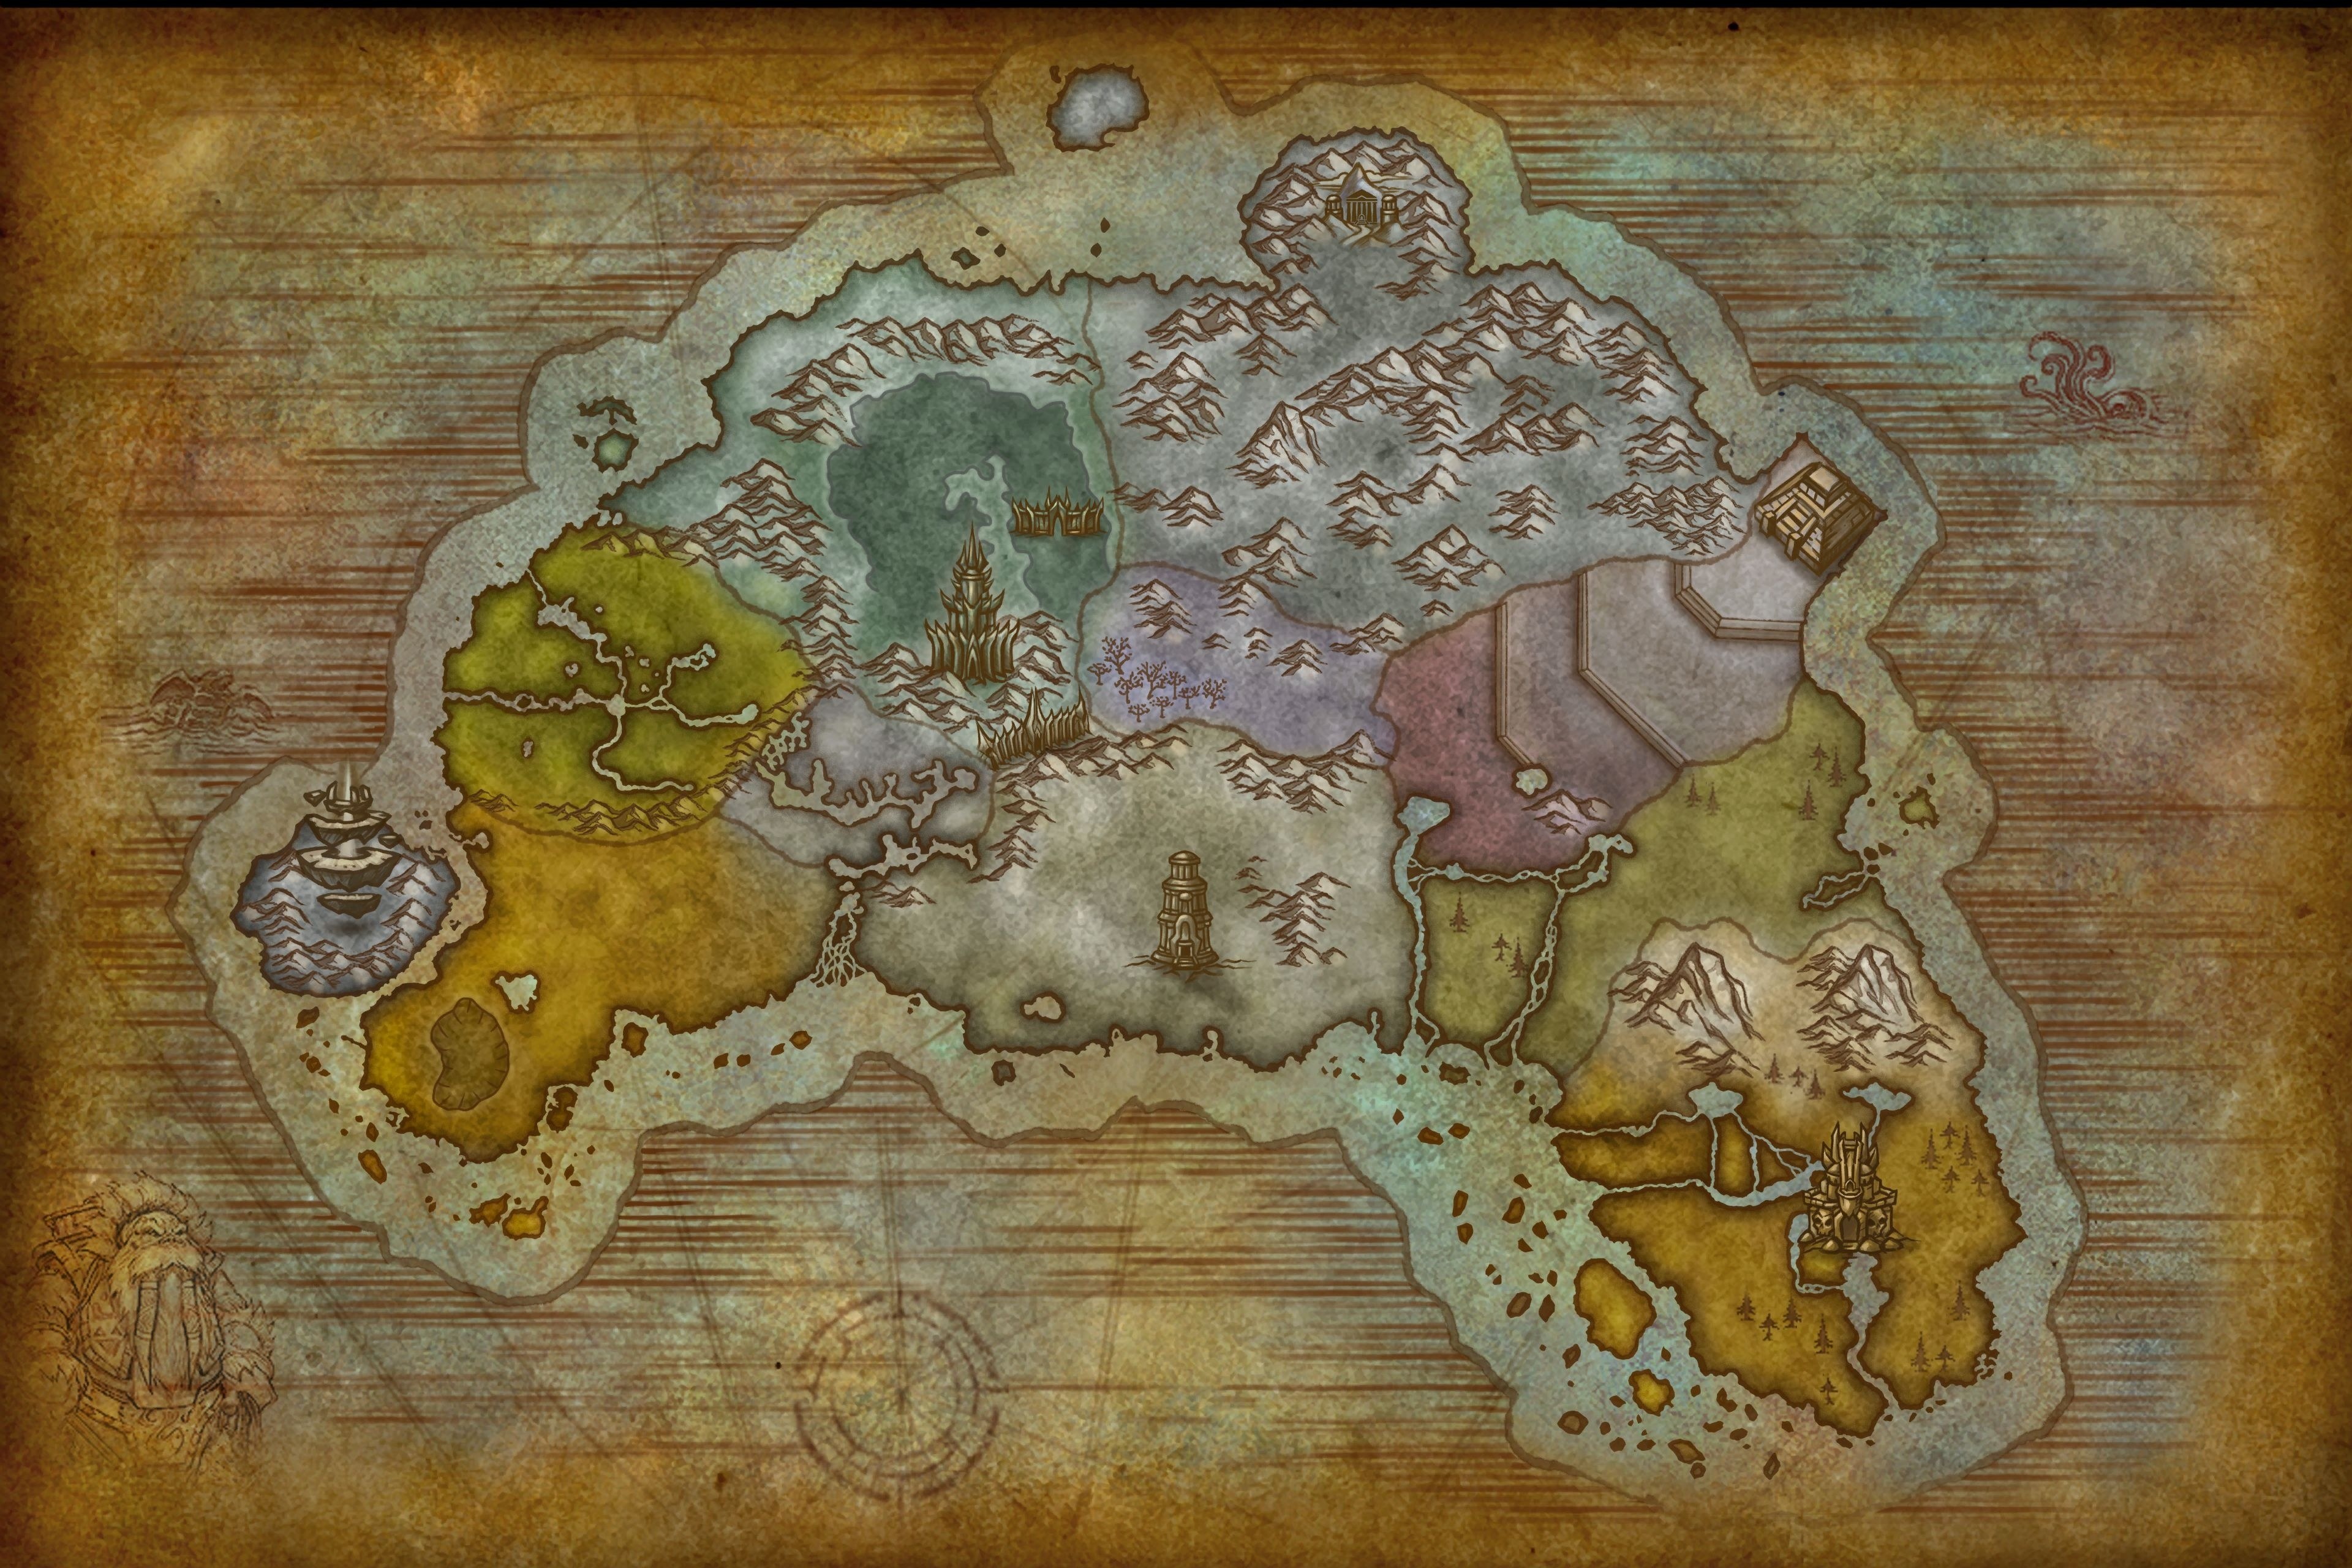 Распорядители полетов 3.3 5. Нордскол wow 3.3.5. World of Warcraft Нордскол. Карта ВОВ 3.3.5 Нордскол. Карта полетов Нордскола ВОВ 3.3.5 Альянс.